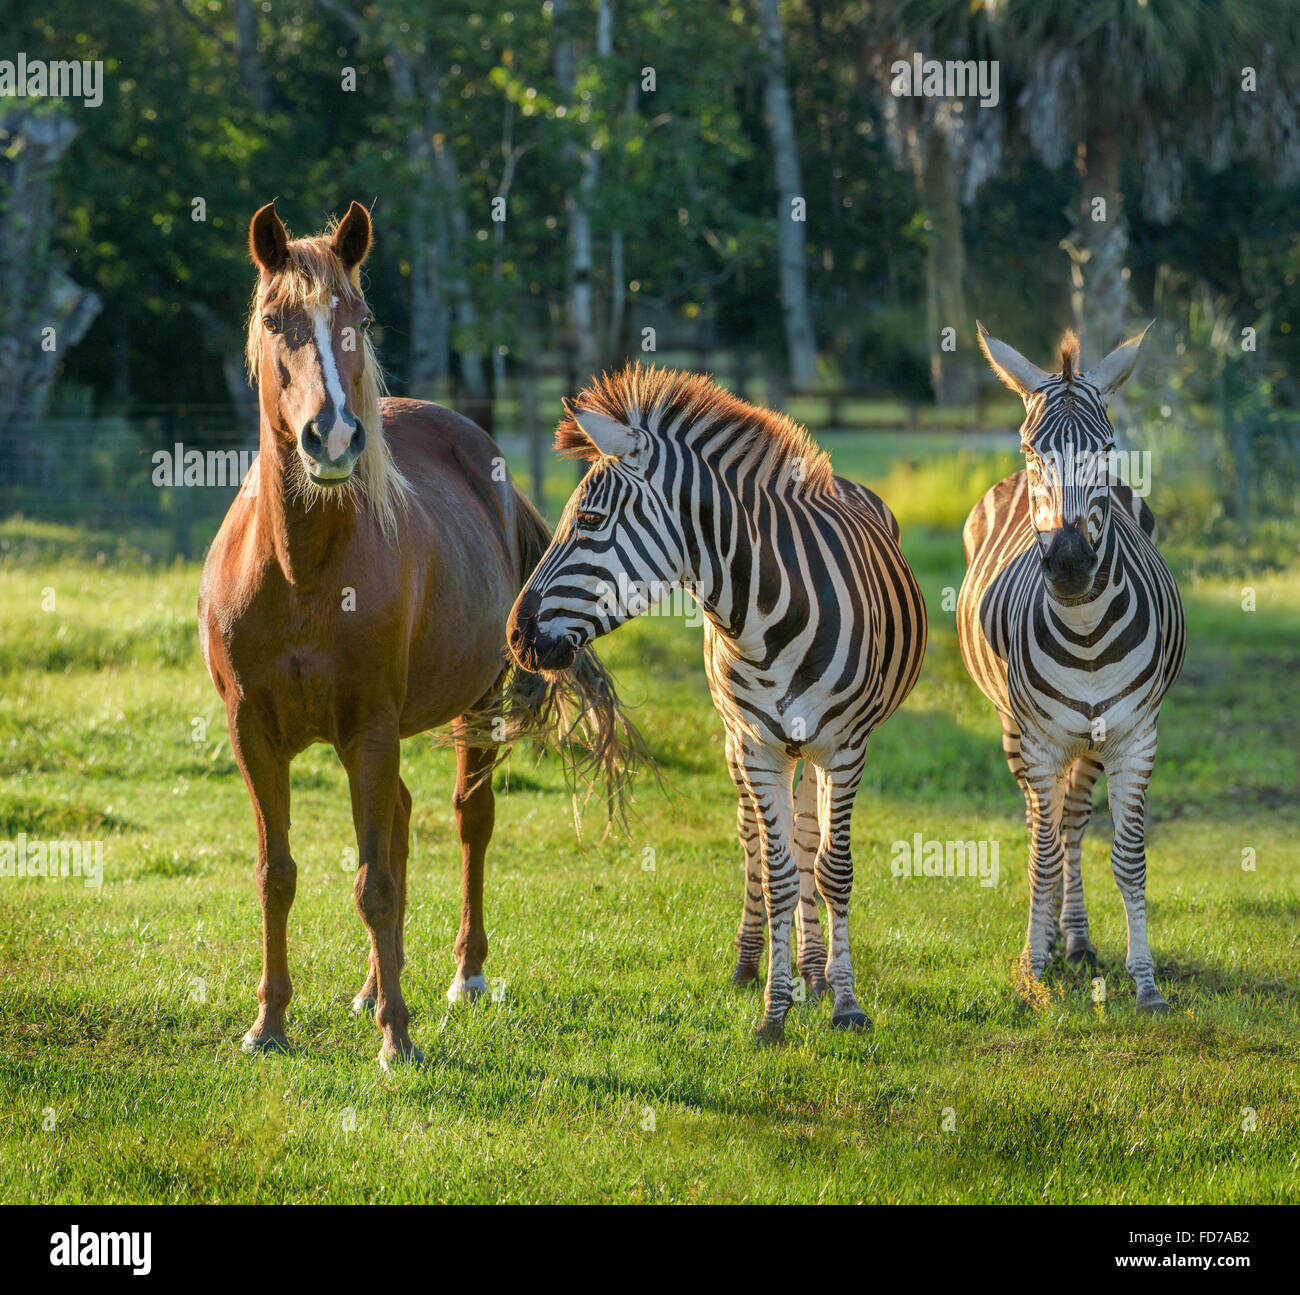 Cavallo in pascolo con due zebra Foto Stock